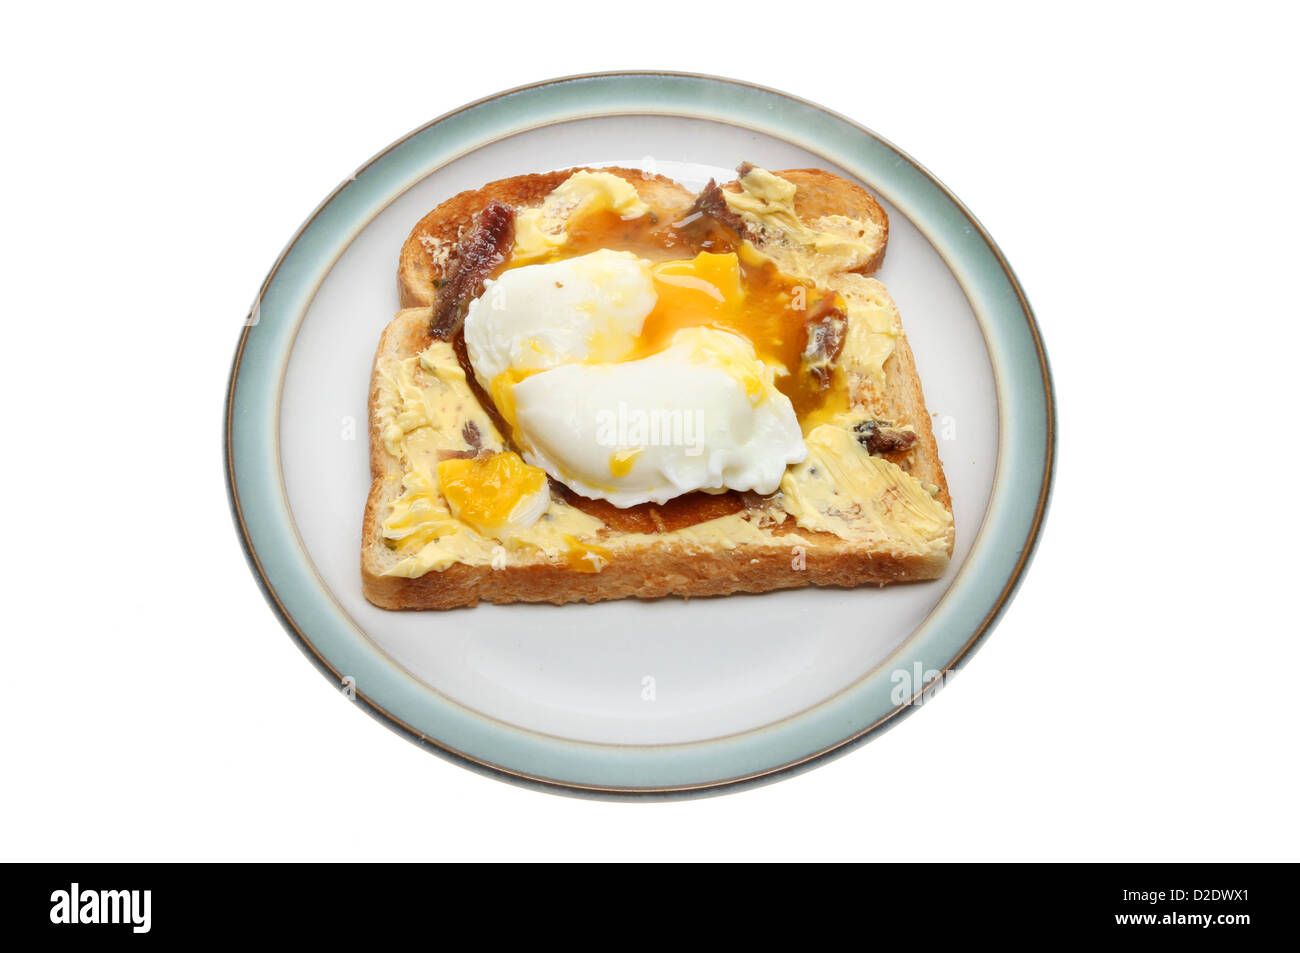 Oeuf poché sur toast avec du beurre d'anchois sur une plaque isolés contre white Banque D'Images